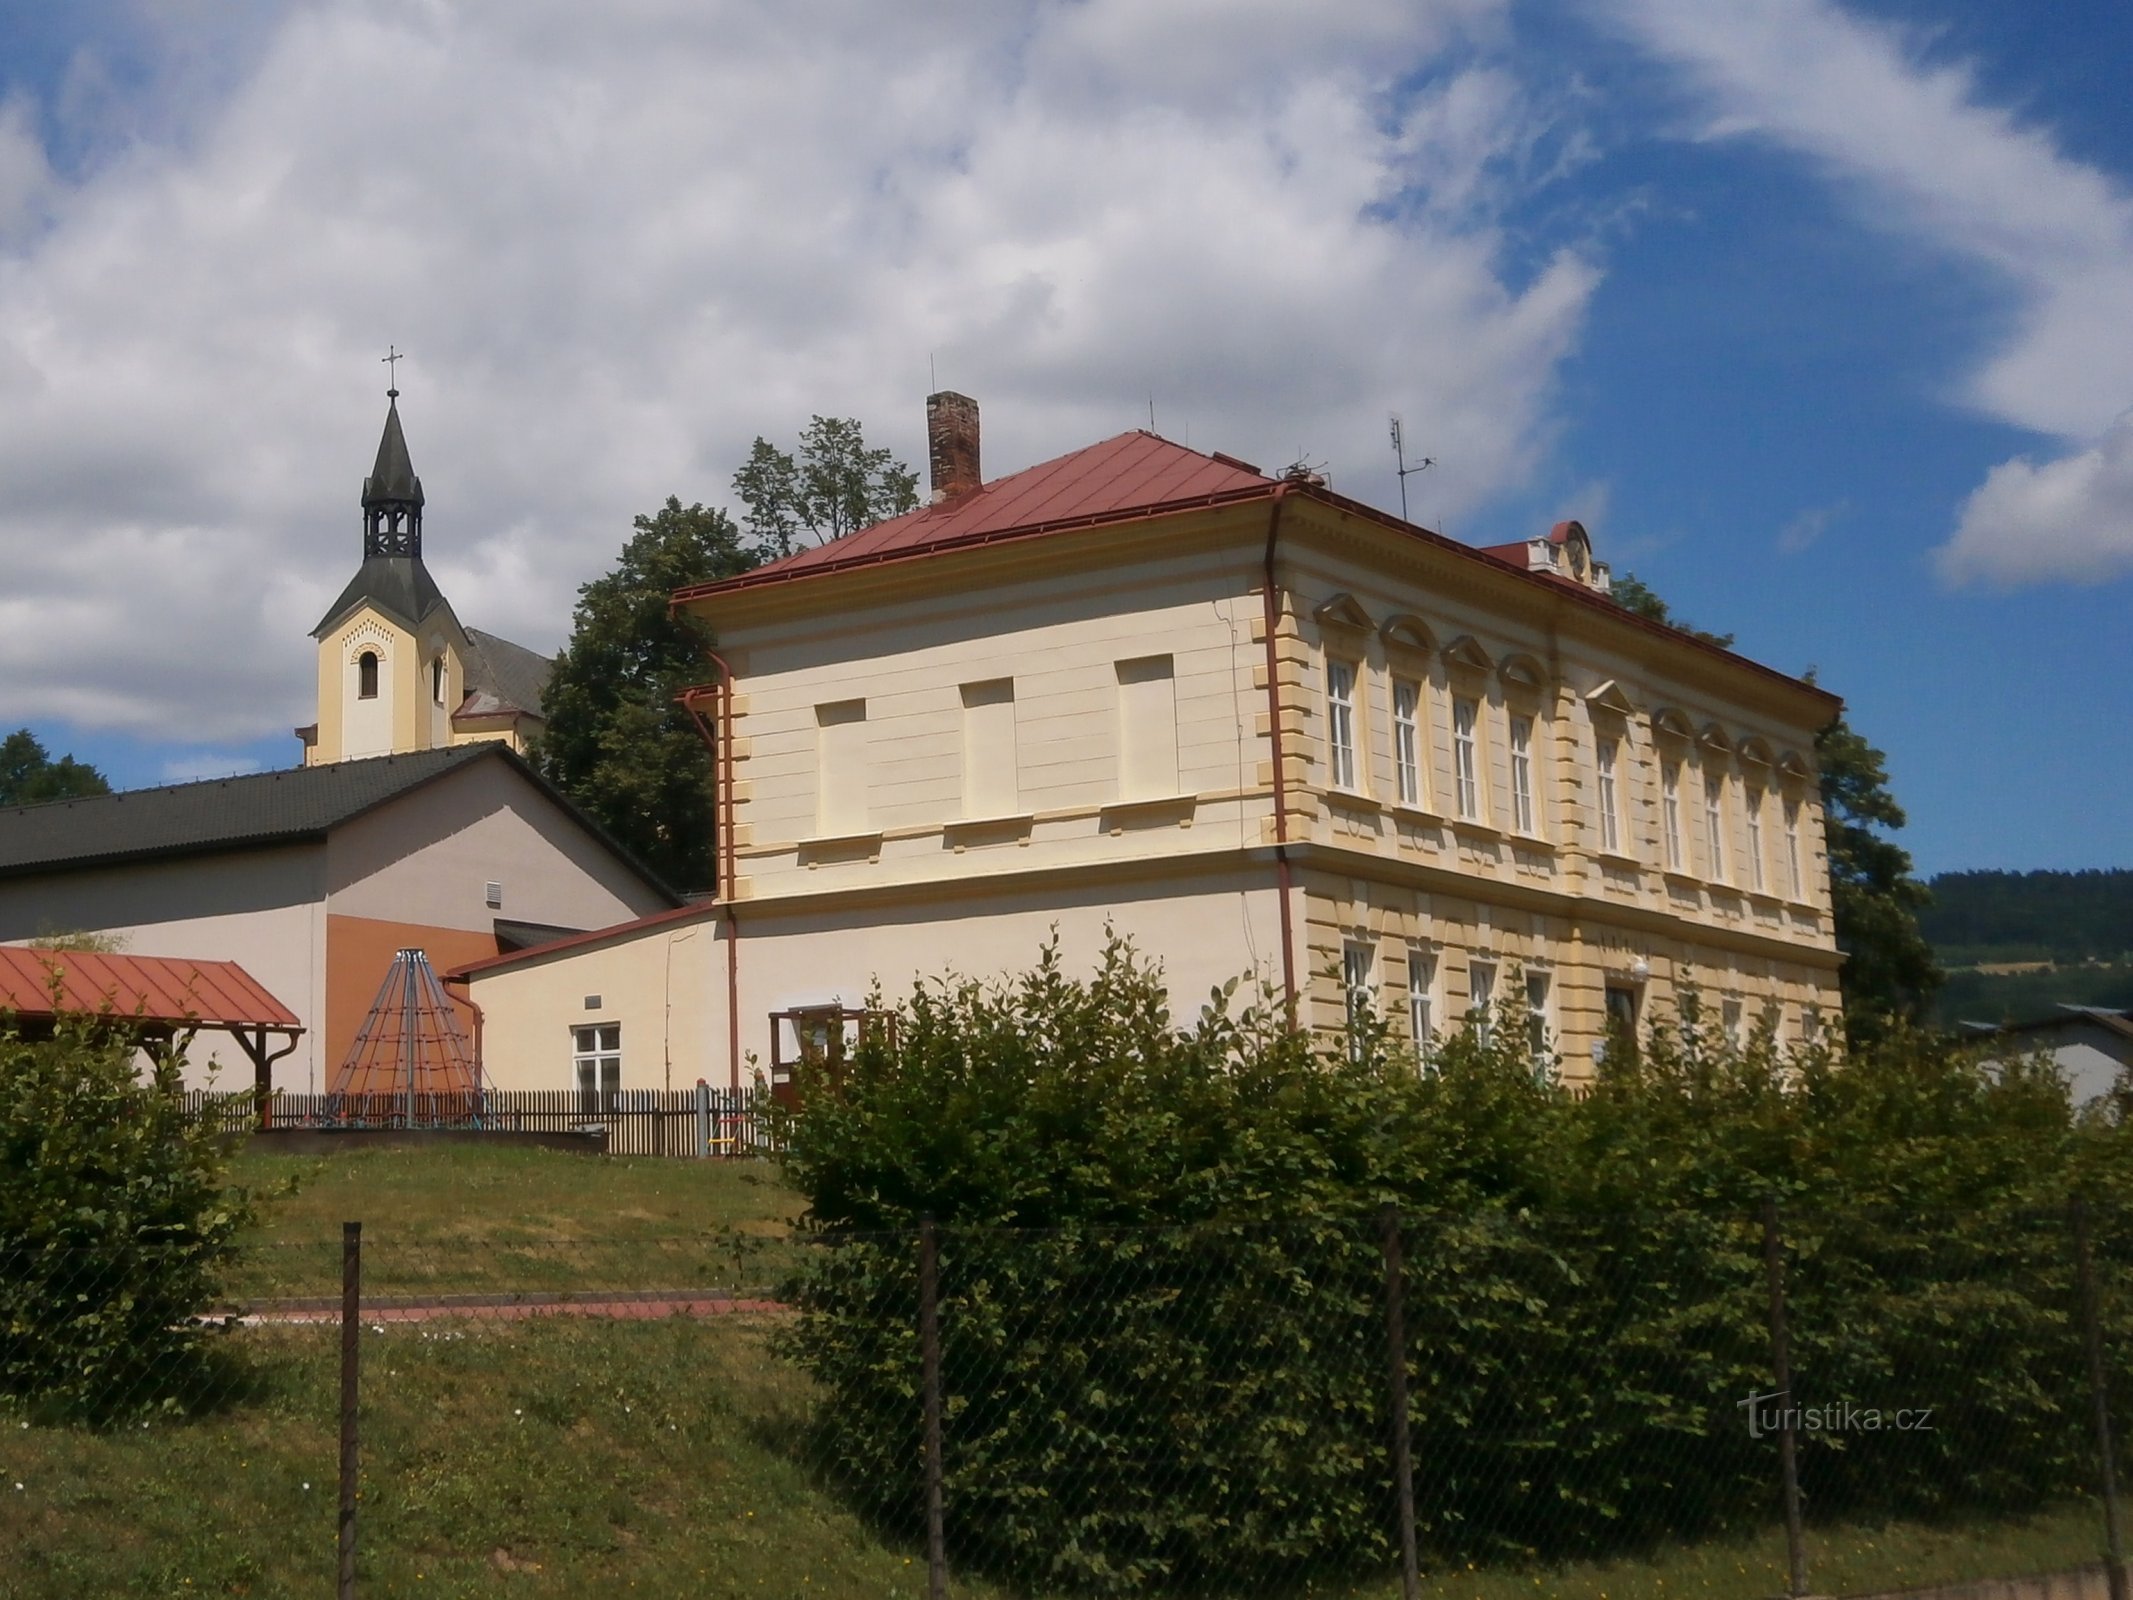 Scuola con una chiesa sullo sfondo (Batňovice, 3.7.2017 luglio XNUMX)